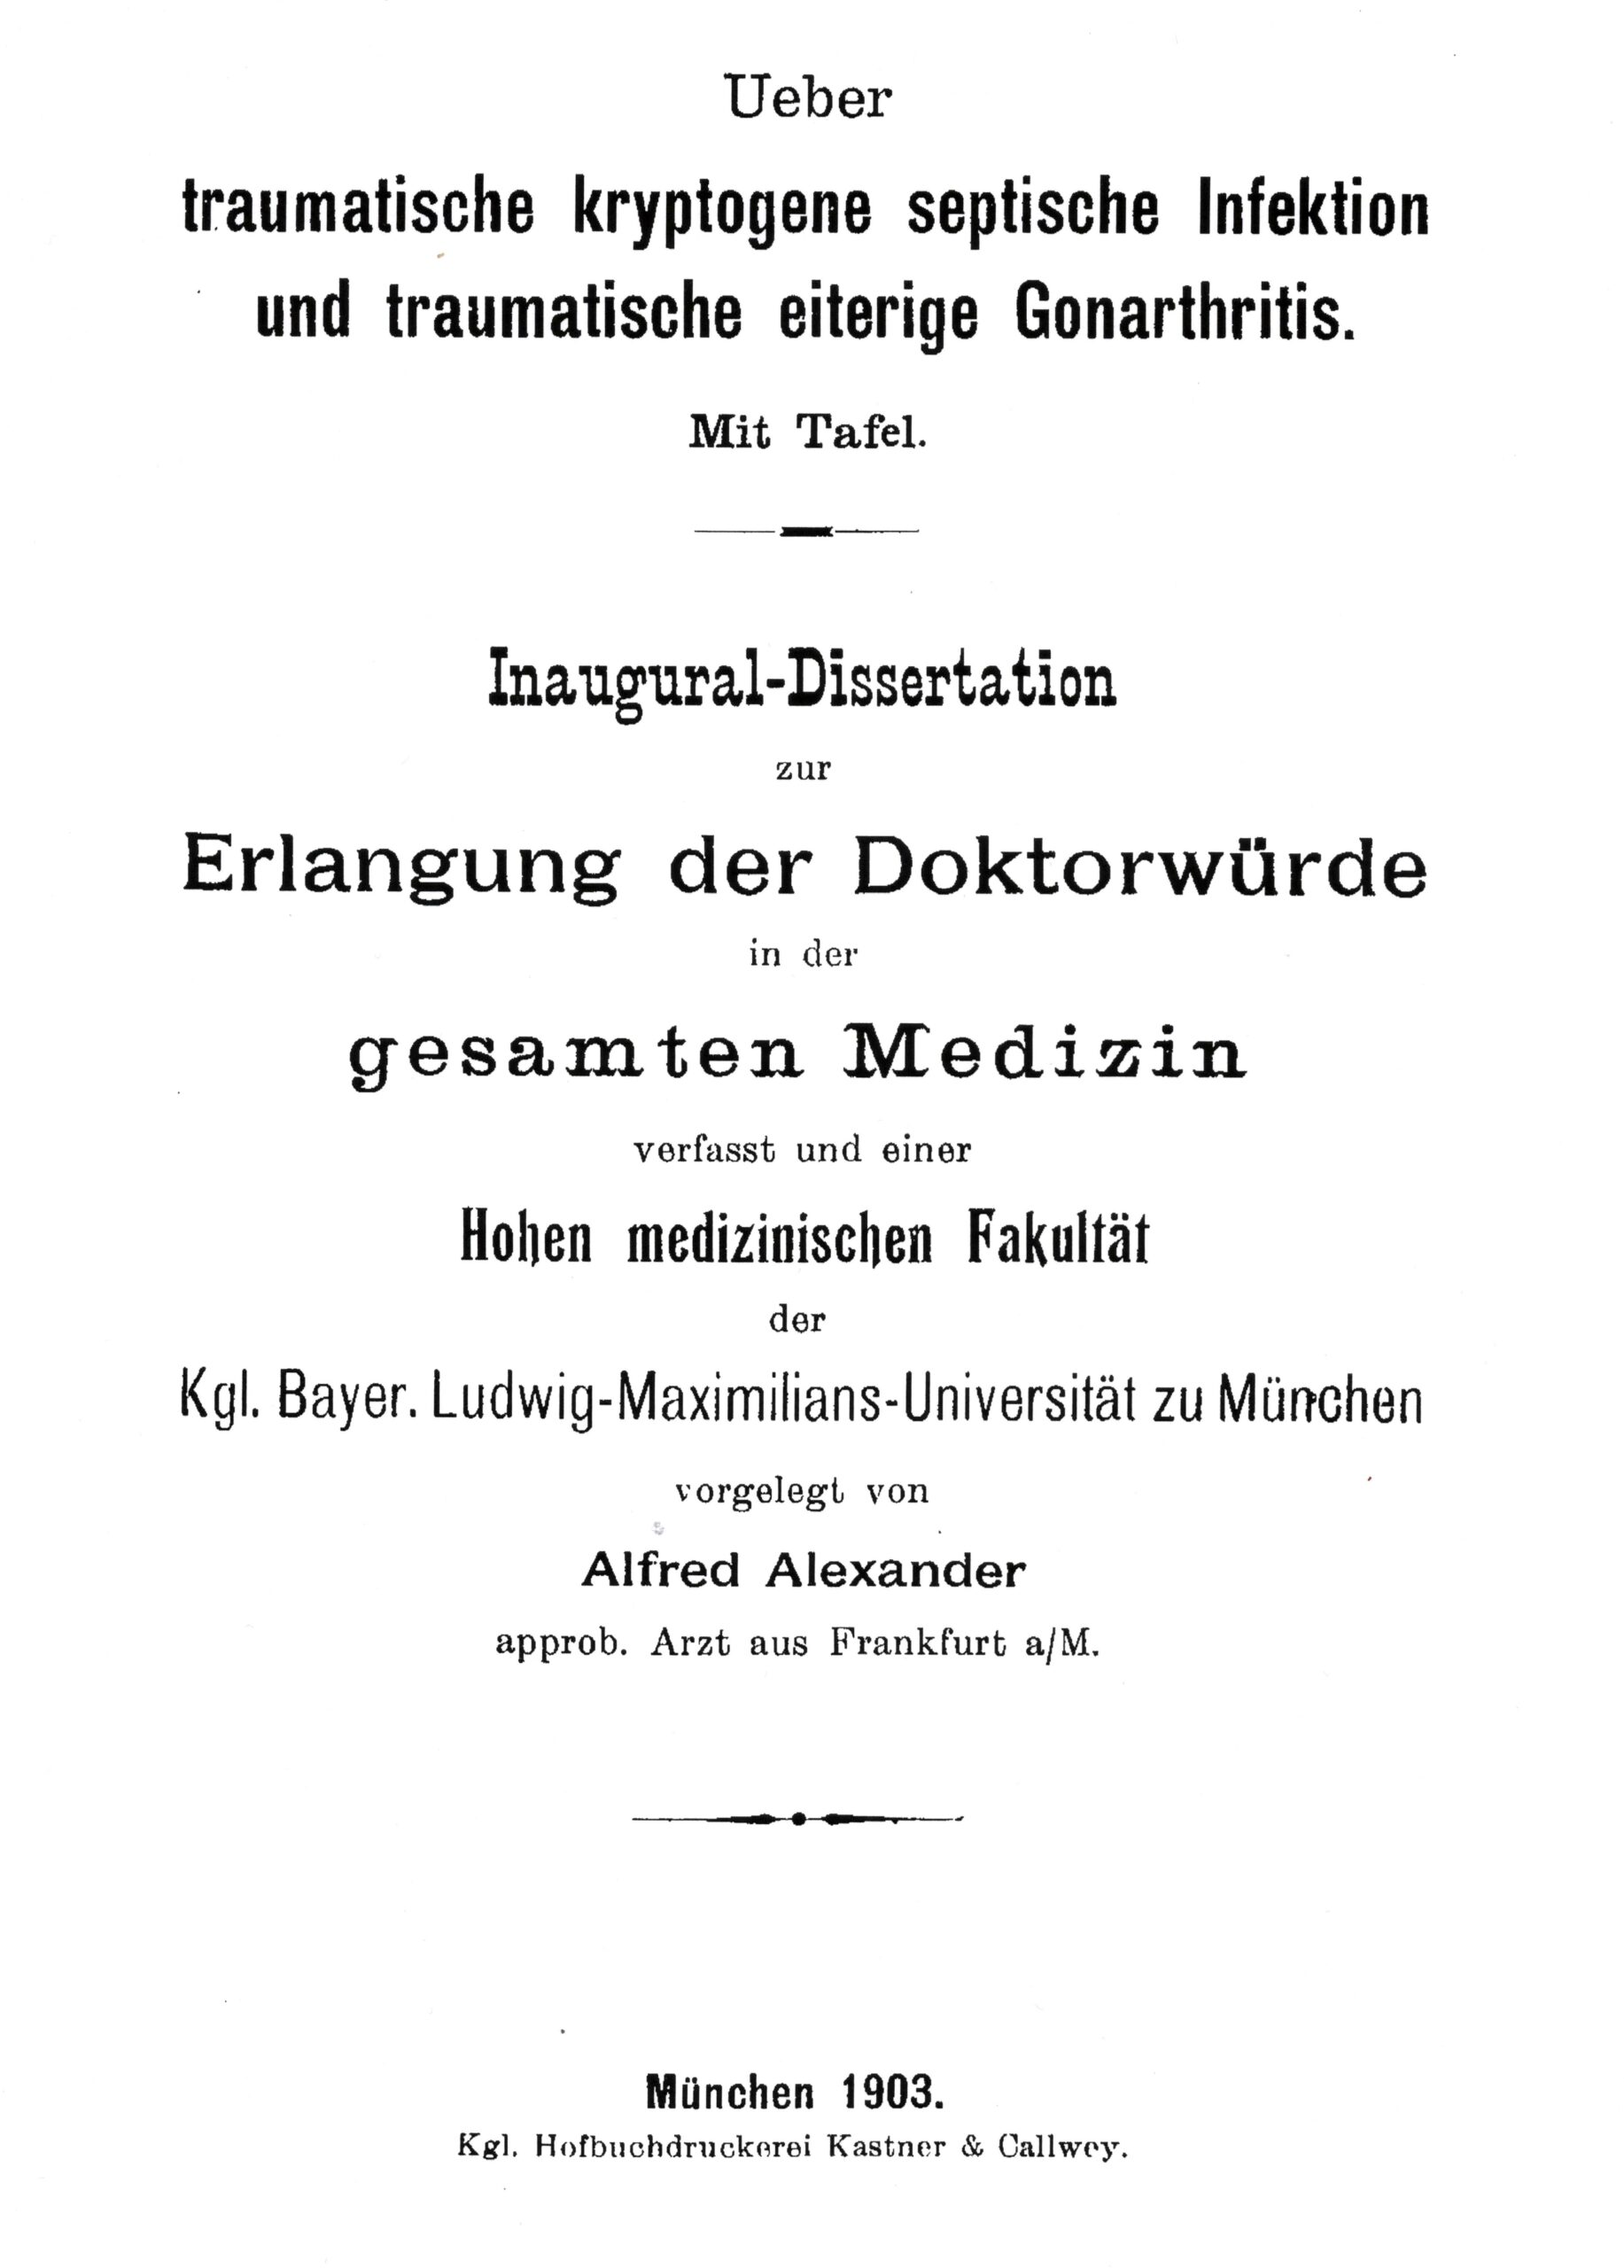 Dissertation, Munich 1903